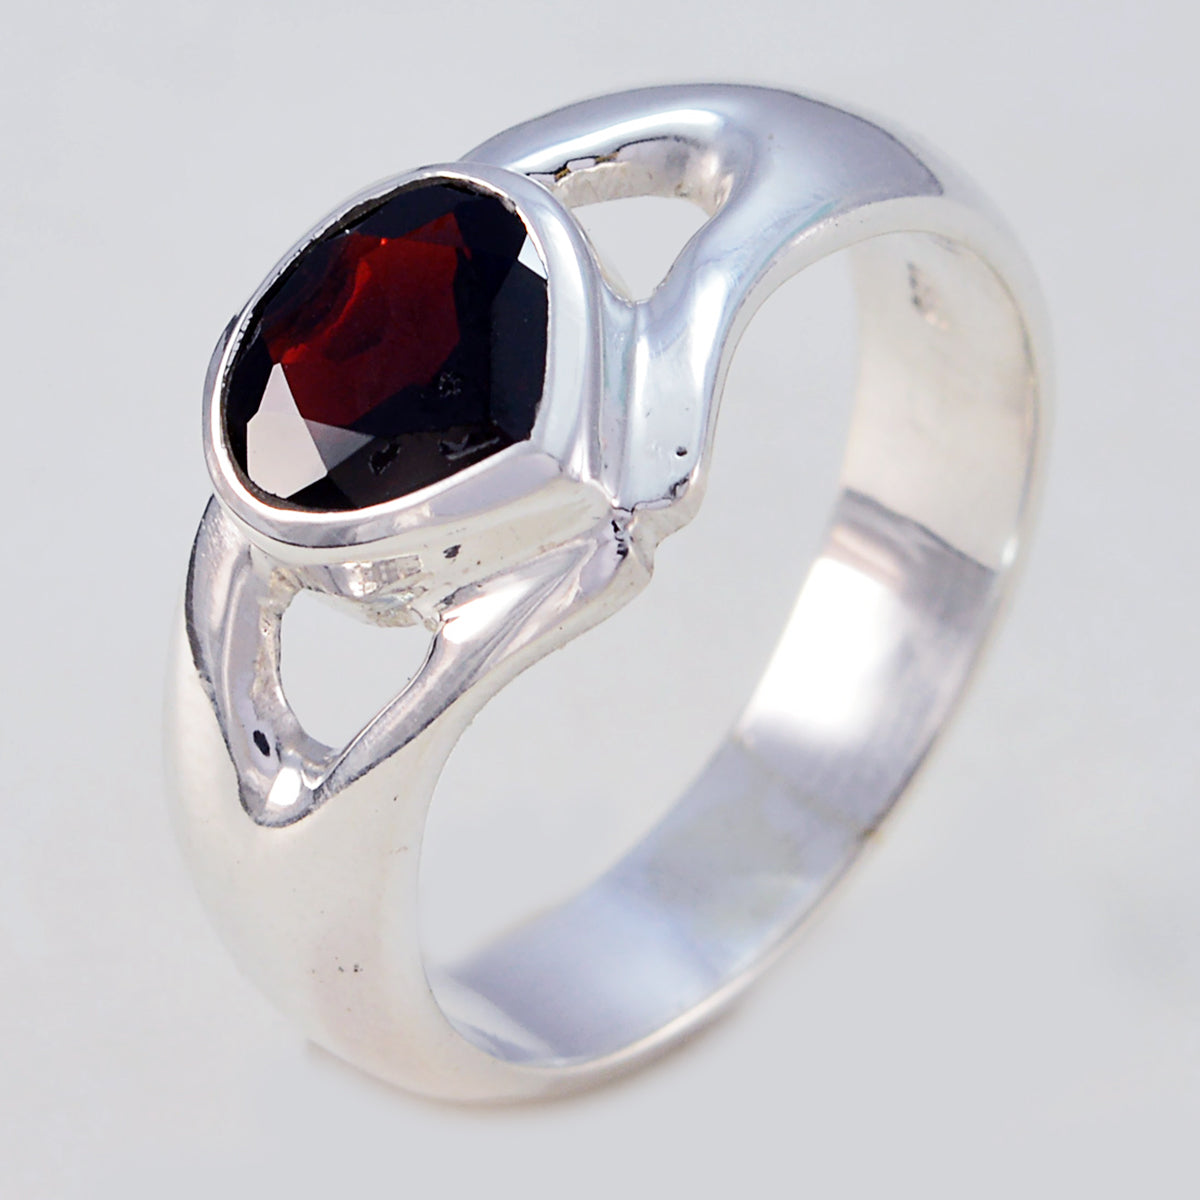 Splendiferous Gems Garnet Sterling Silver Rings Gift Valentine'S Day